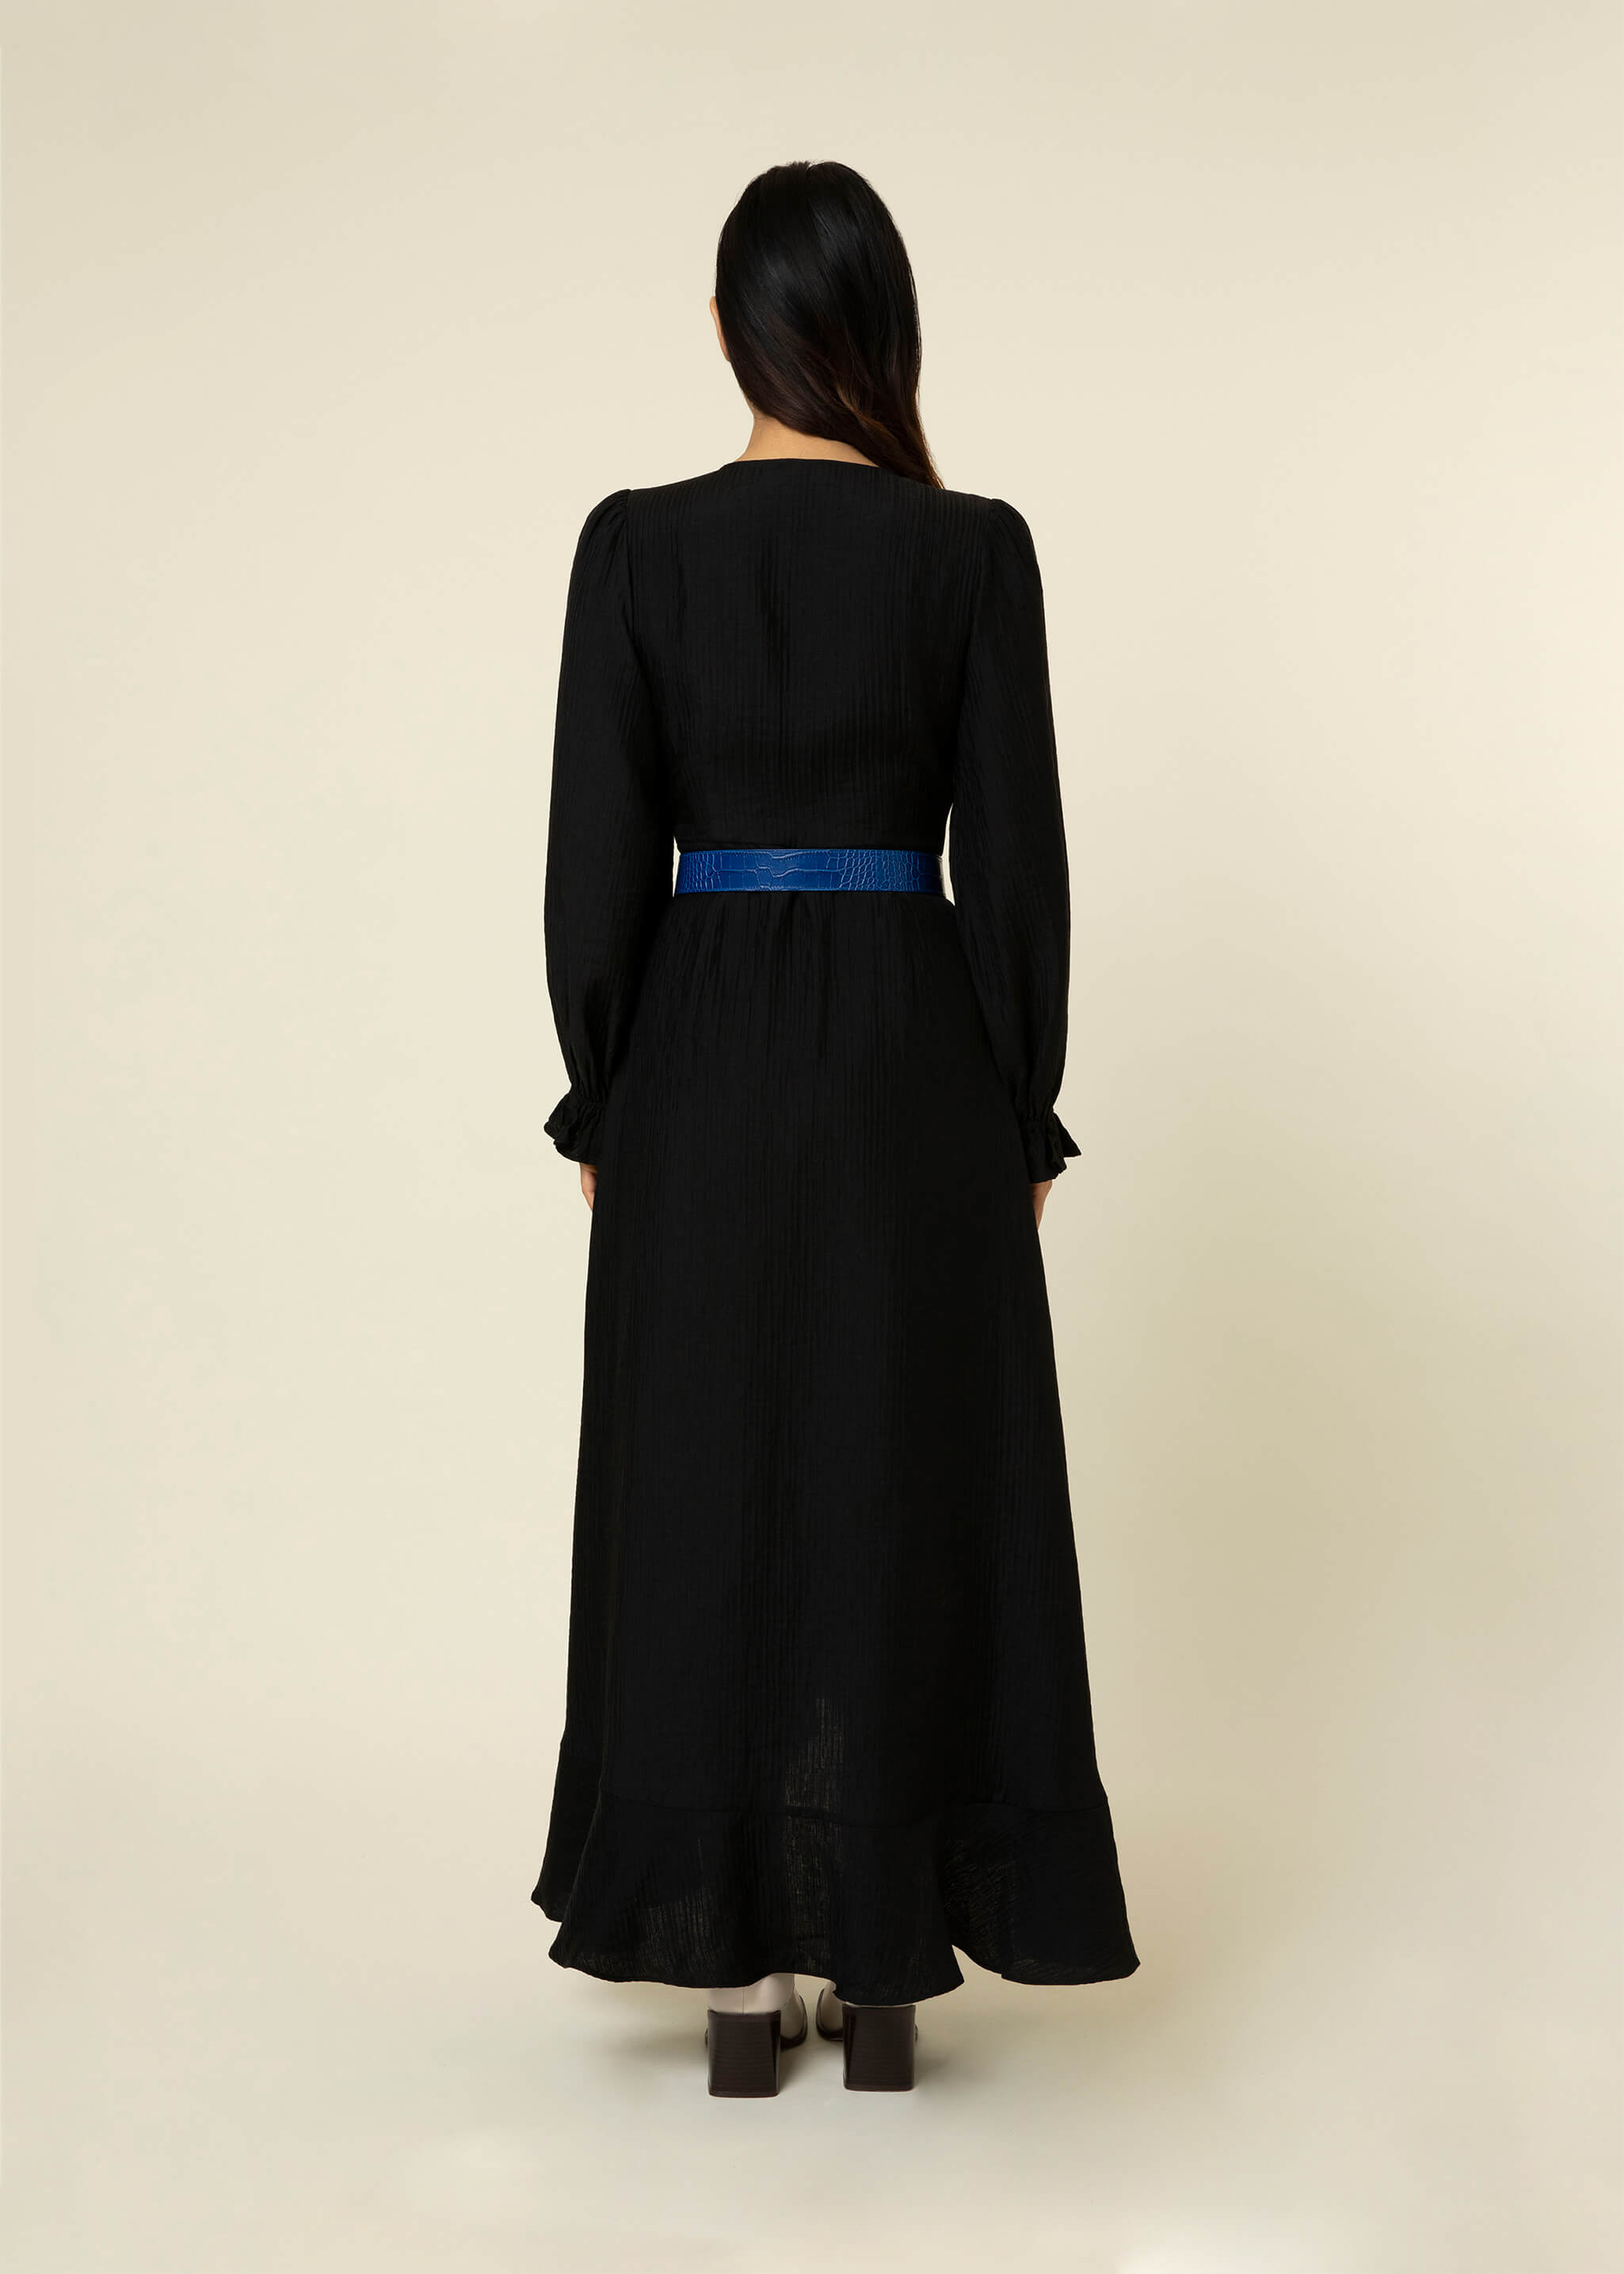 Taisy Dress (Black)